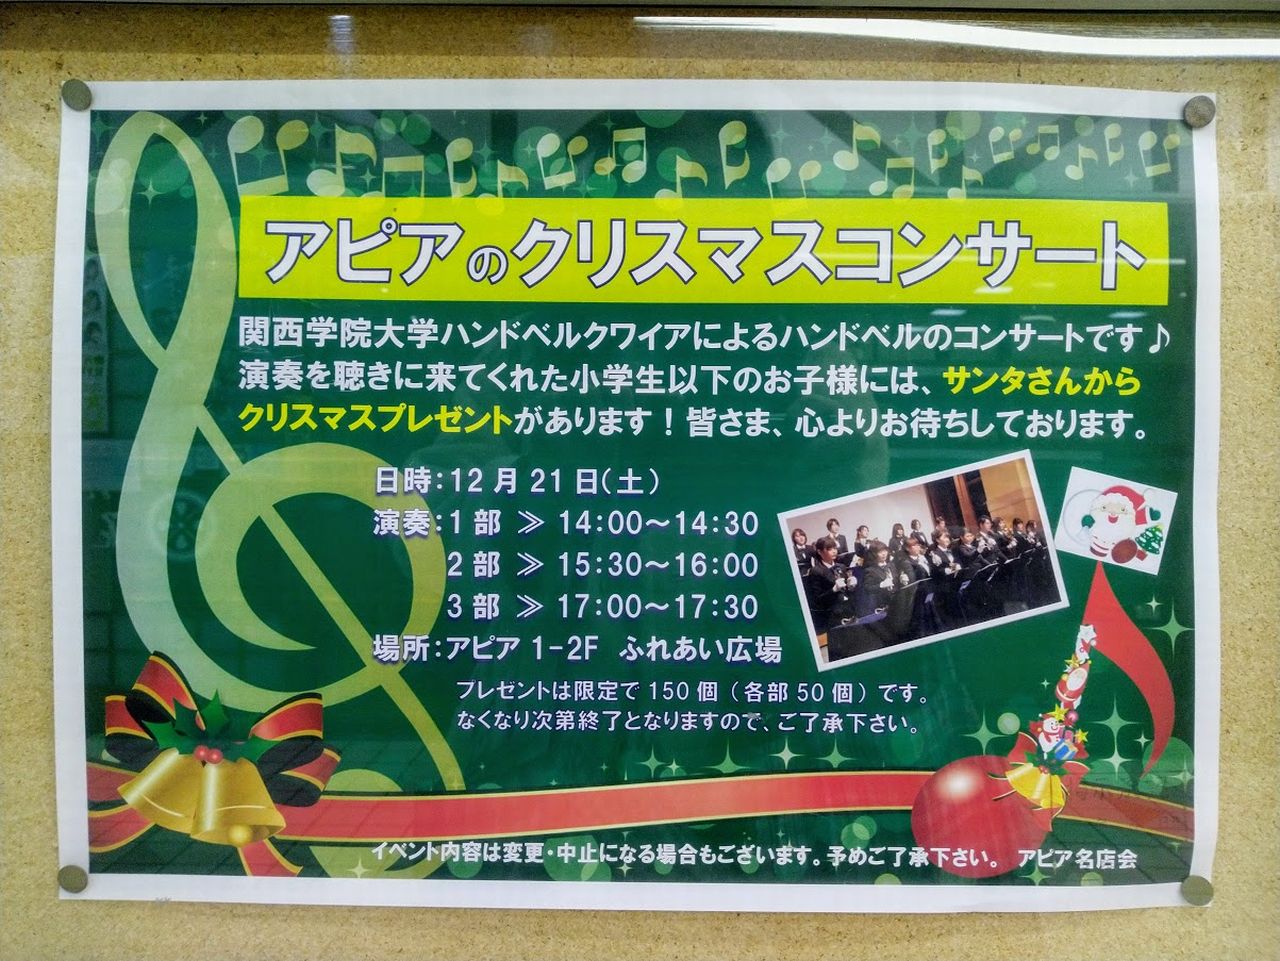 アピアのクリスマスコンサートはハンドベルの演奏です